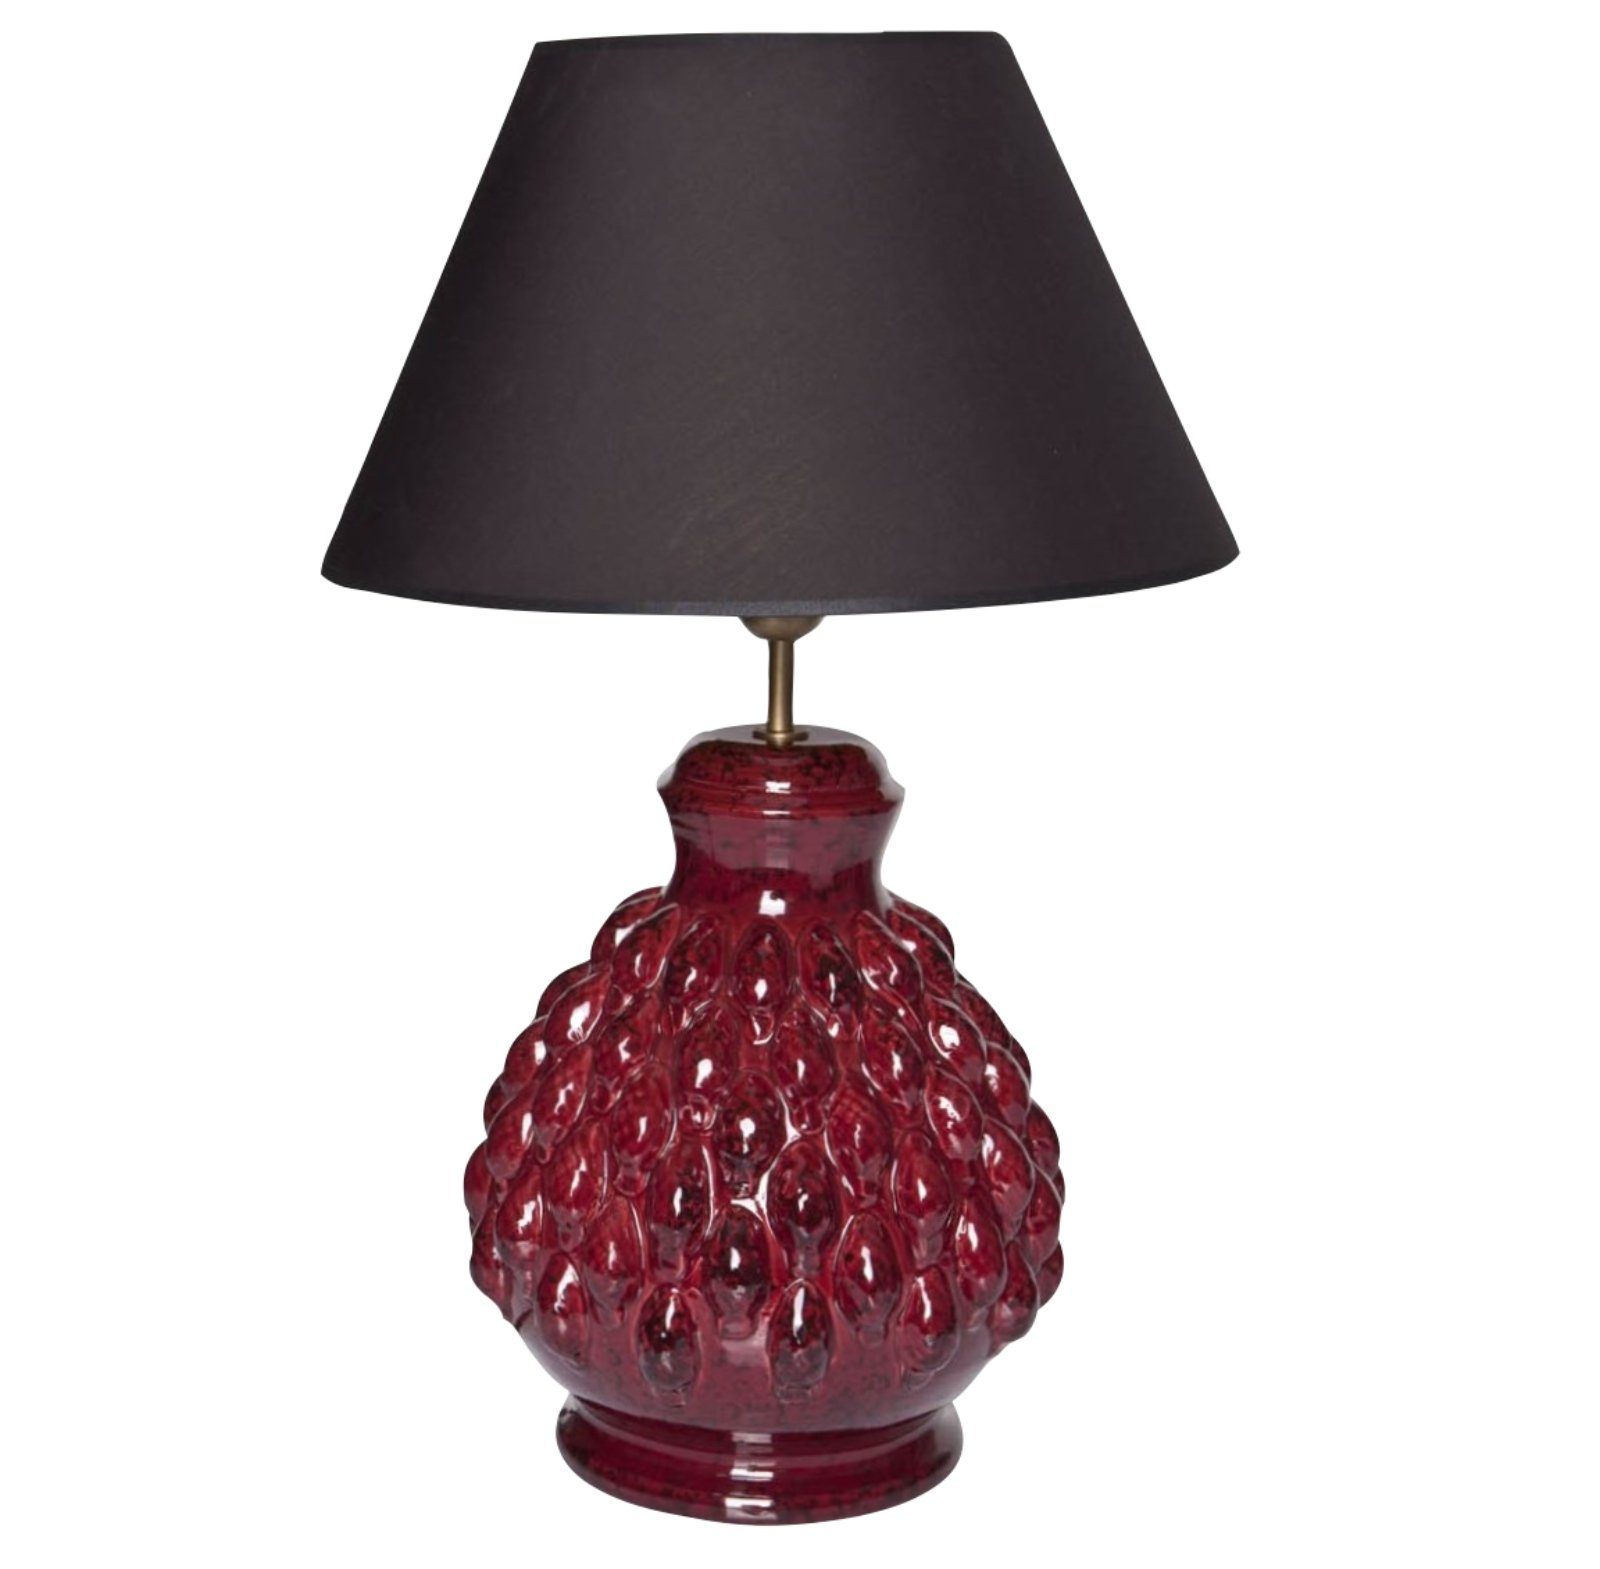 Signature Home Collection Nachttischlampe Tischlampe Keramik mit Stoffschirm schwarz Nachttischlampe, ohne Leuchtmittel, warmweiß, Tischlampe handgefertigt rot